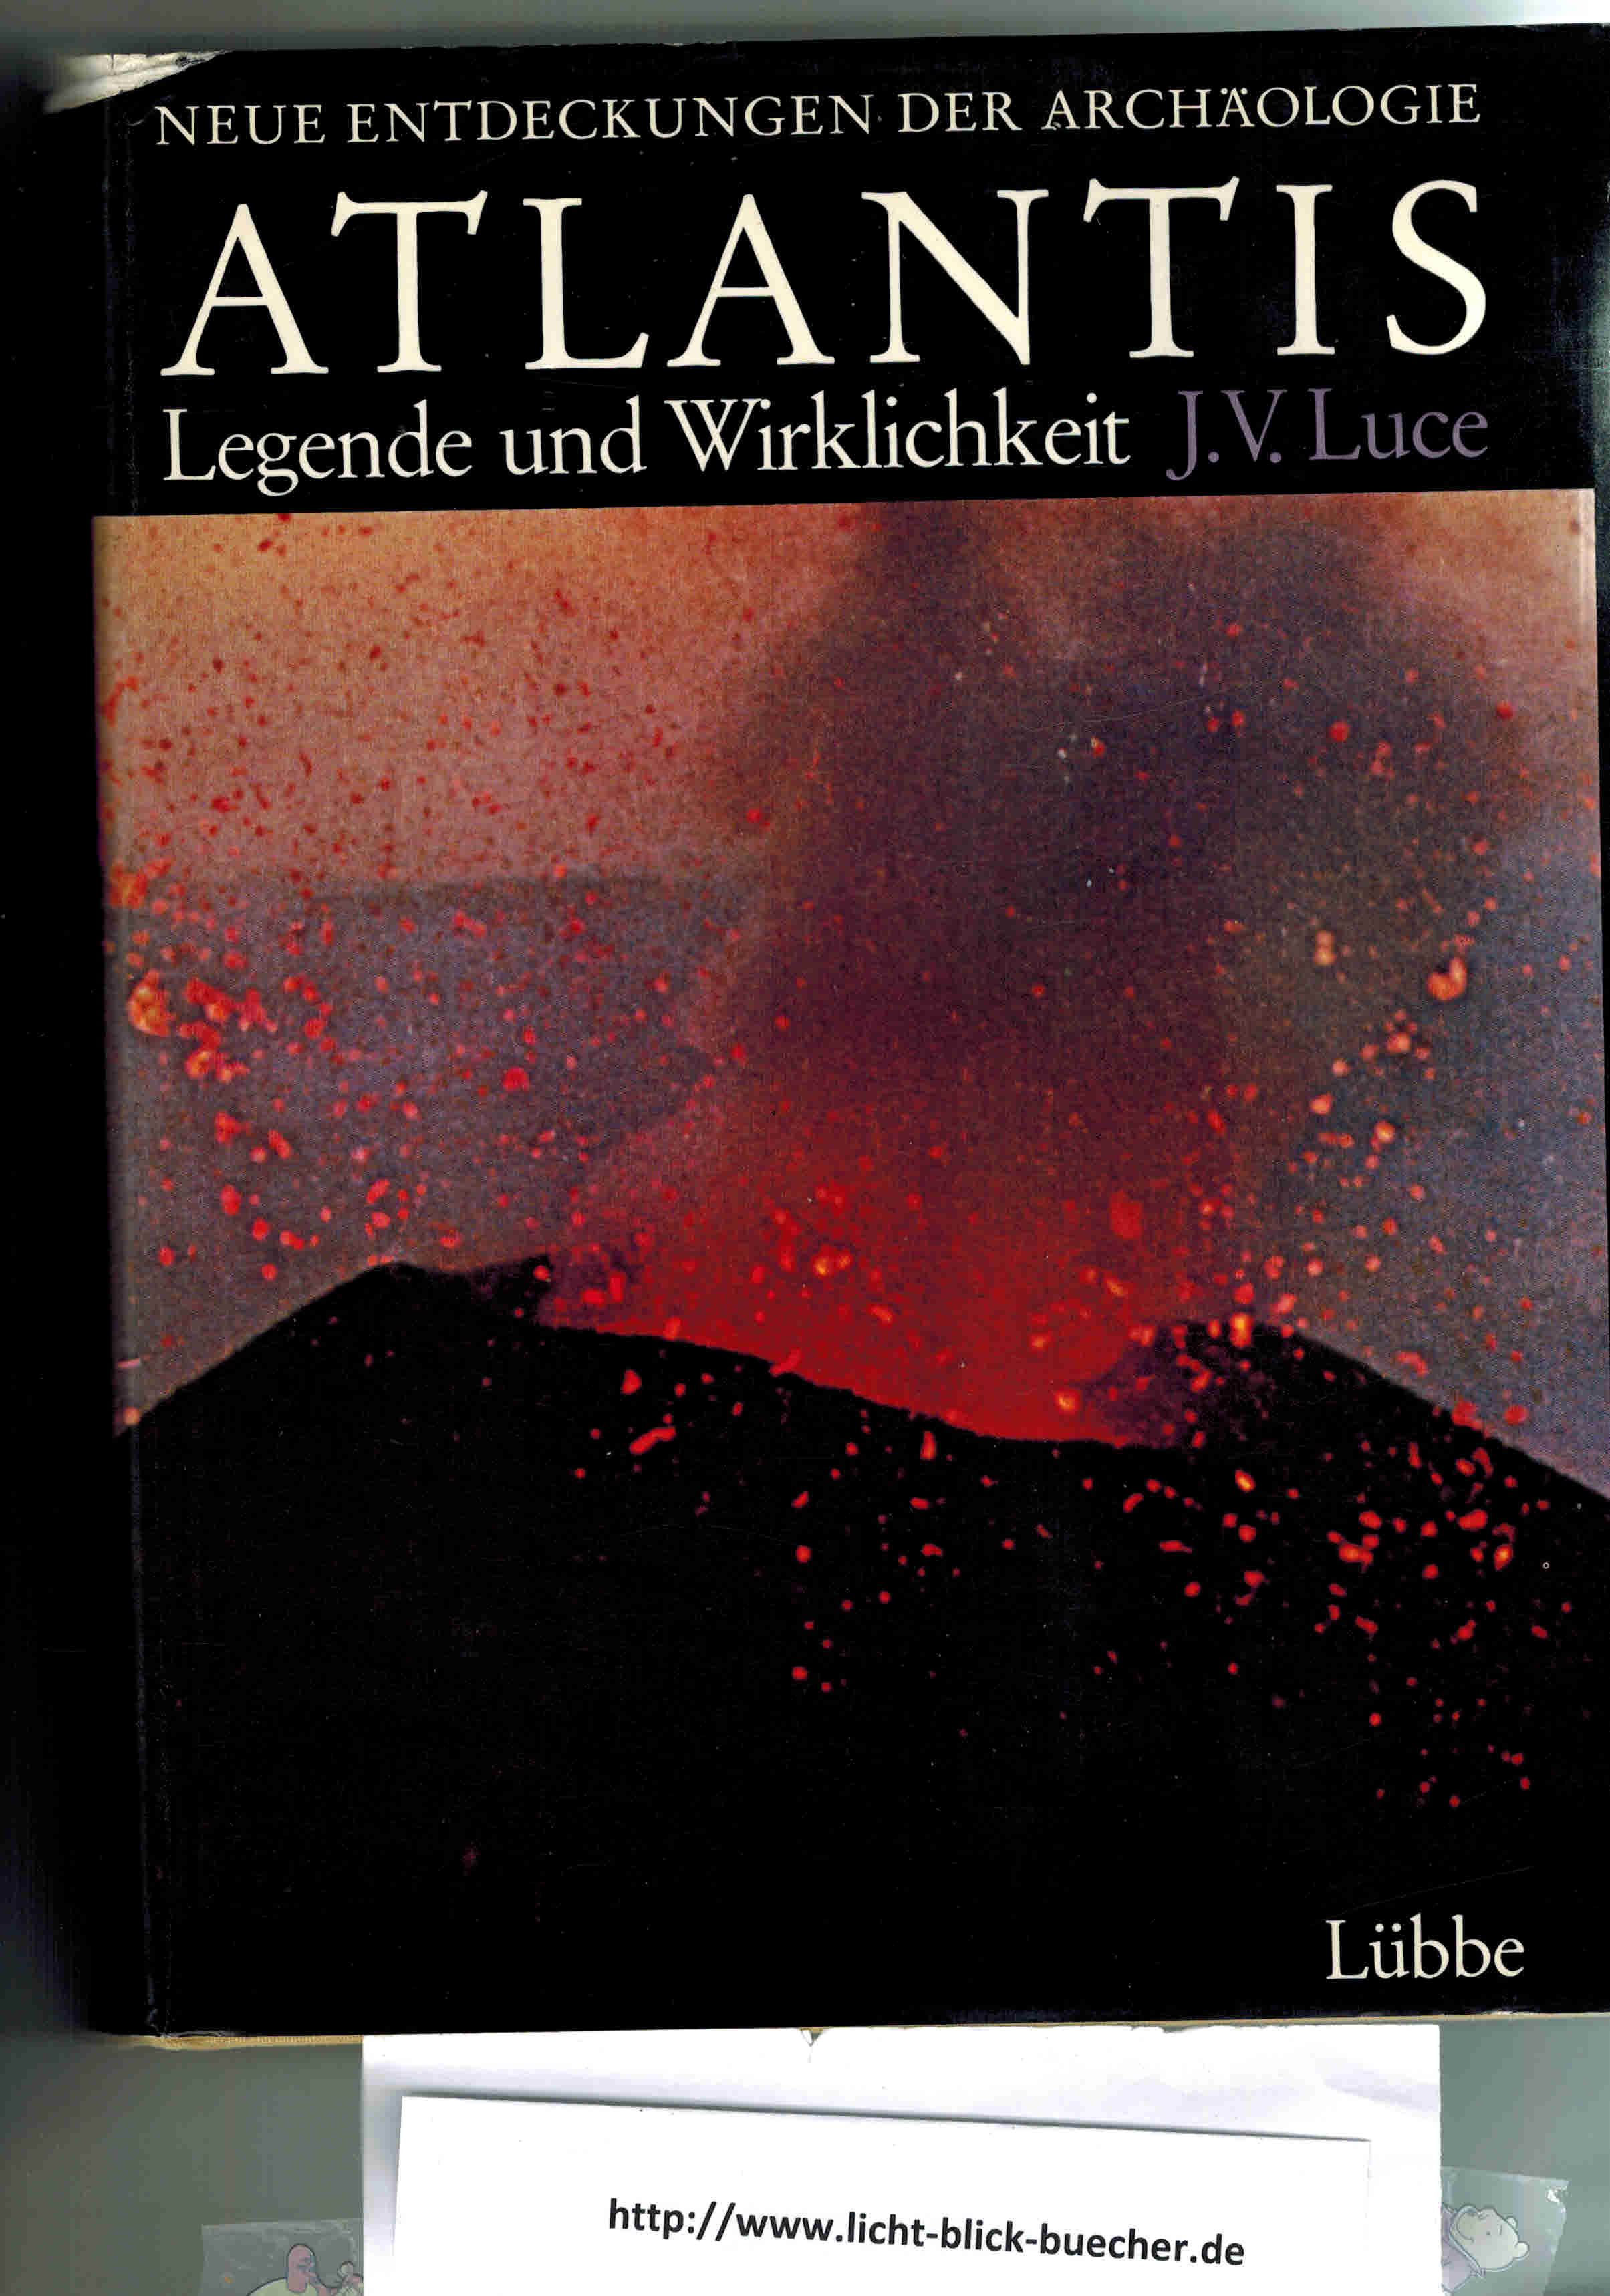 Atlantis - Legende und Wirklichkeit J.V. Luce